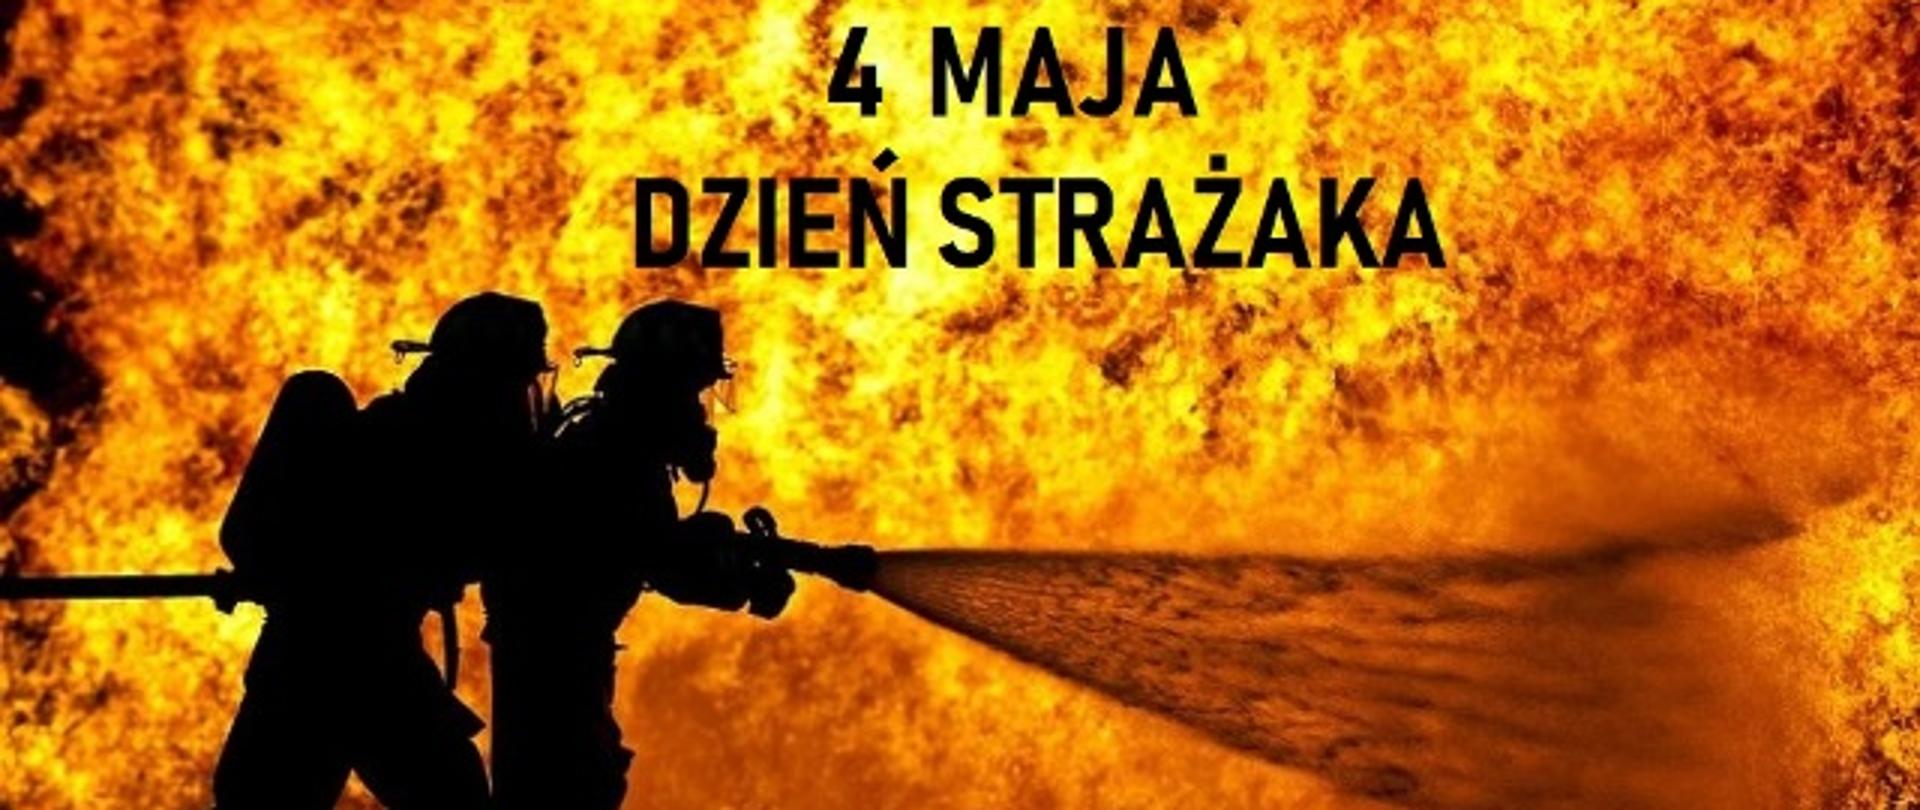 Strażacy gaszący pożar - Plakat z okazji Międzynarodowego Dnia Strażaka - 04.05.2022